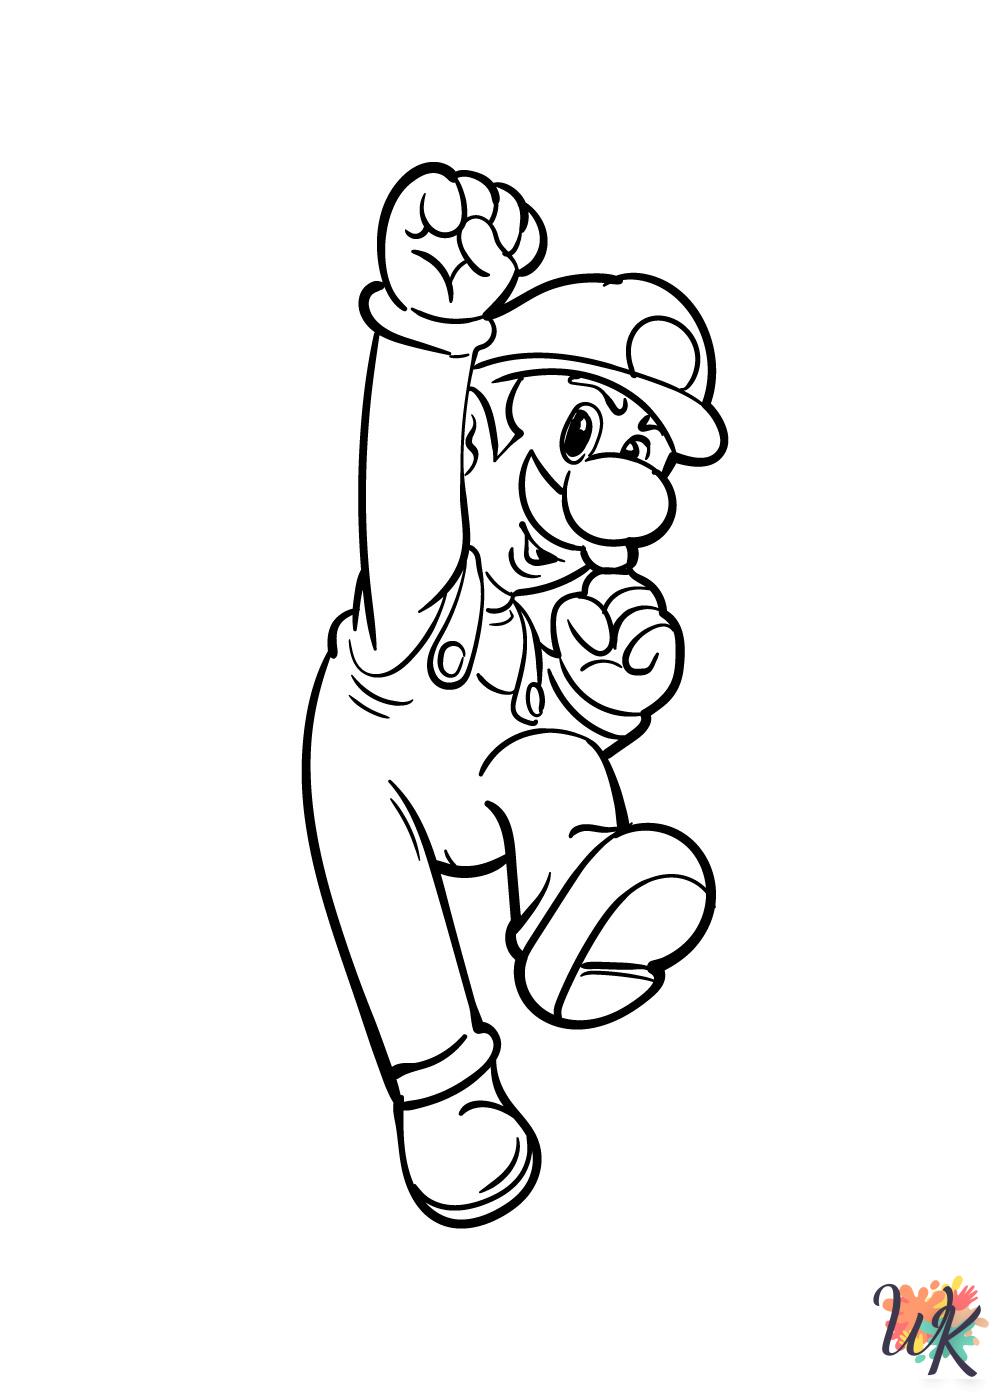 easy Super Mario Bros coloring pages